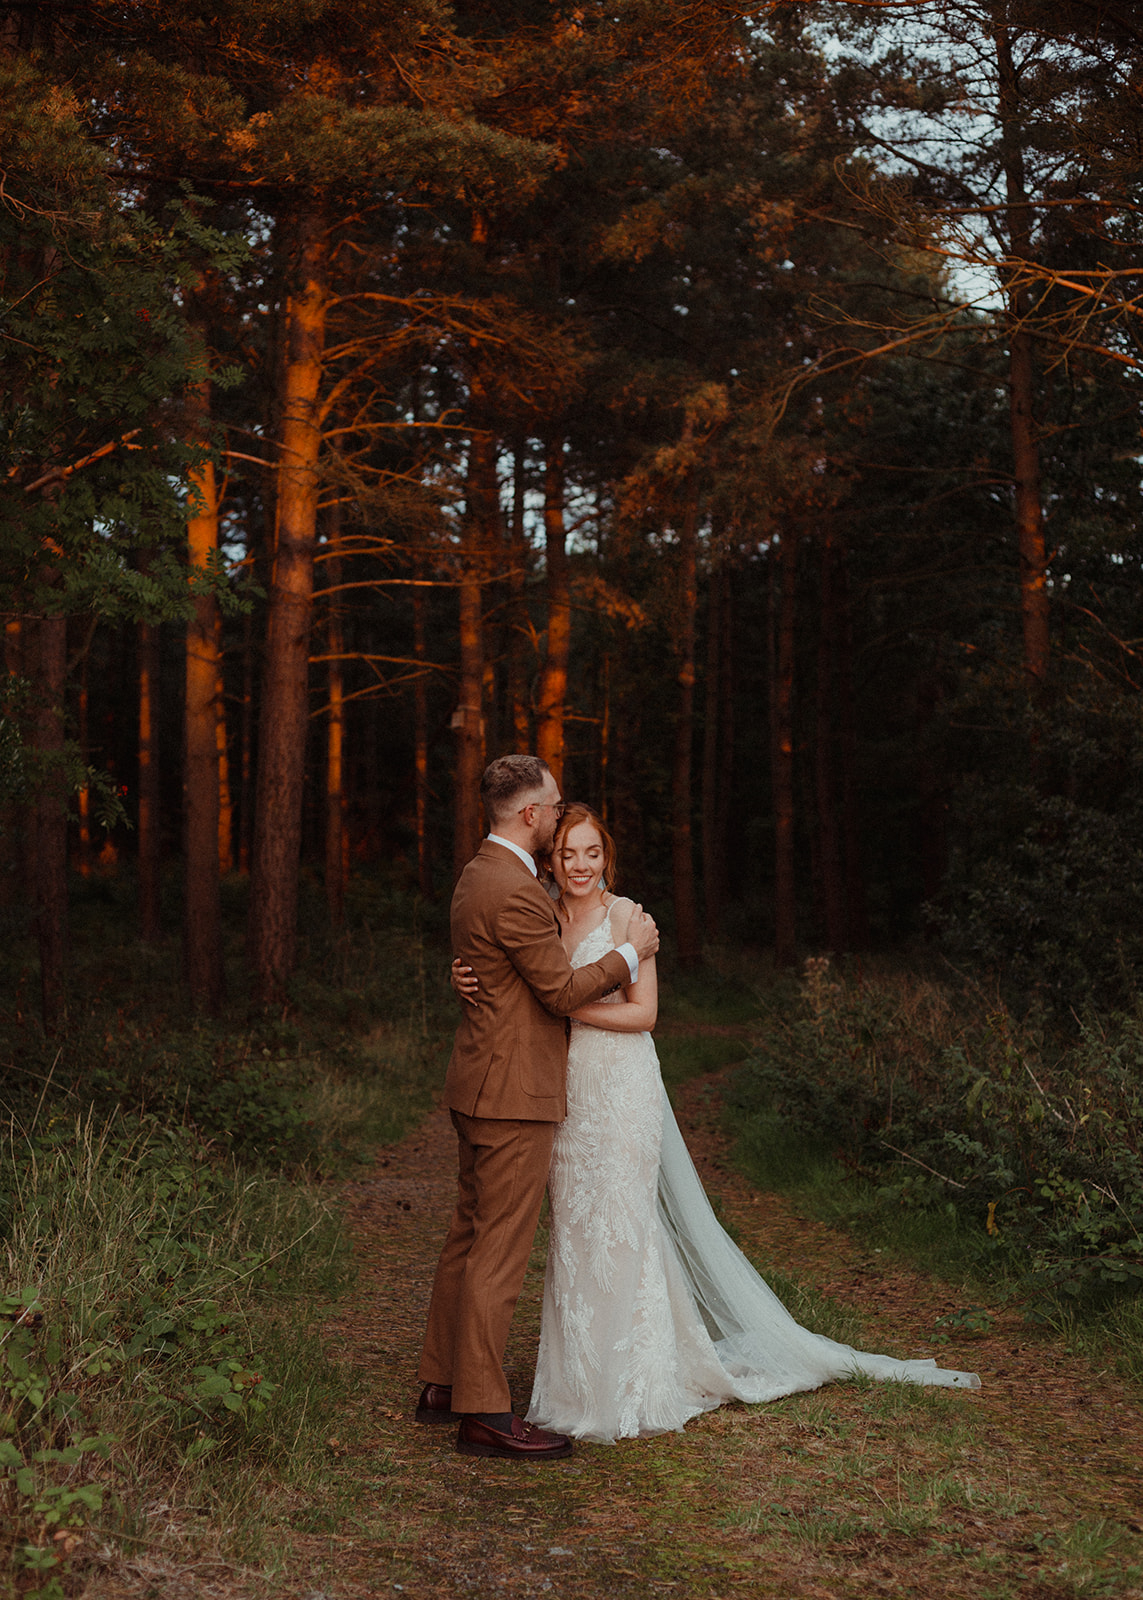 Jess & Tim | Healey Barn Wedding | Leica Q